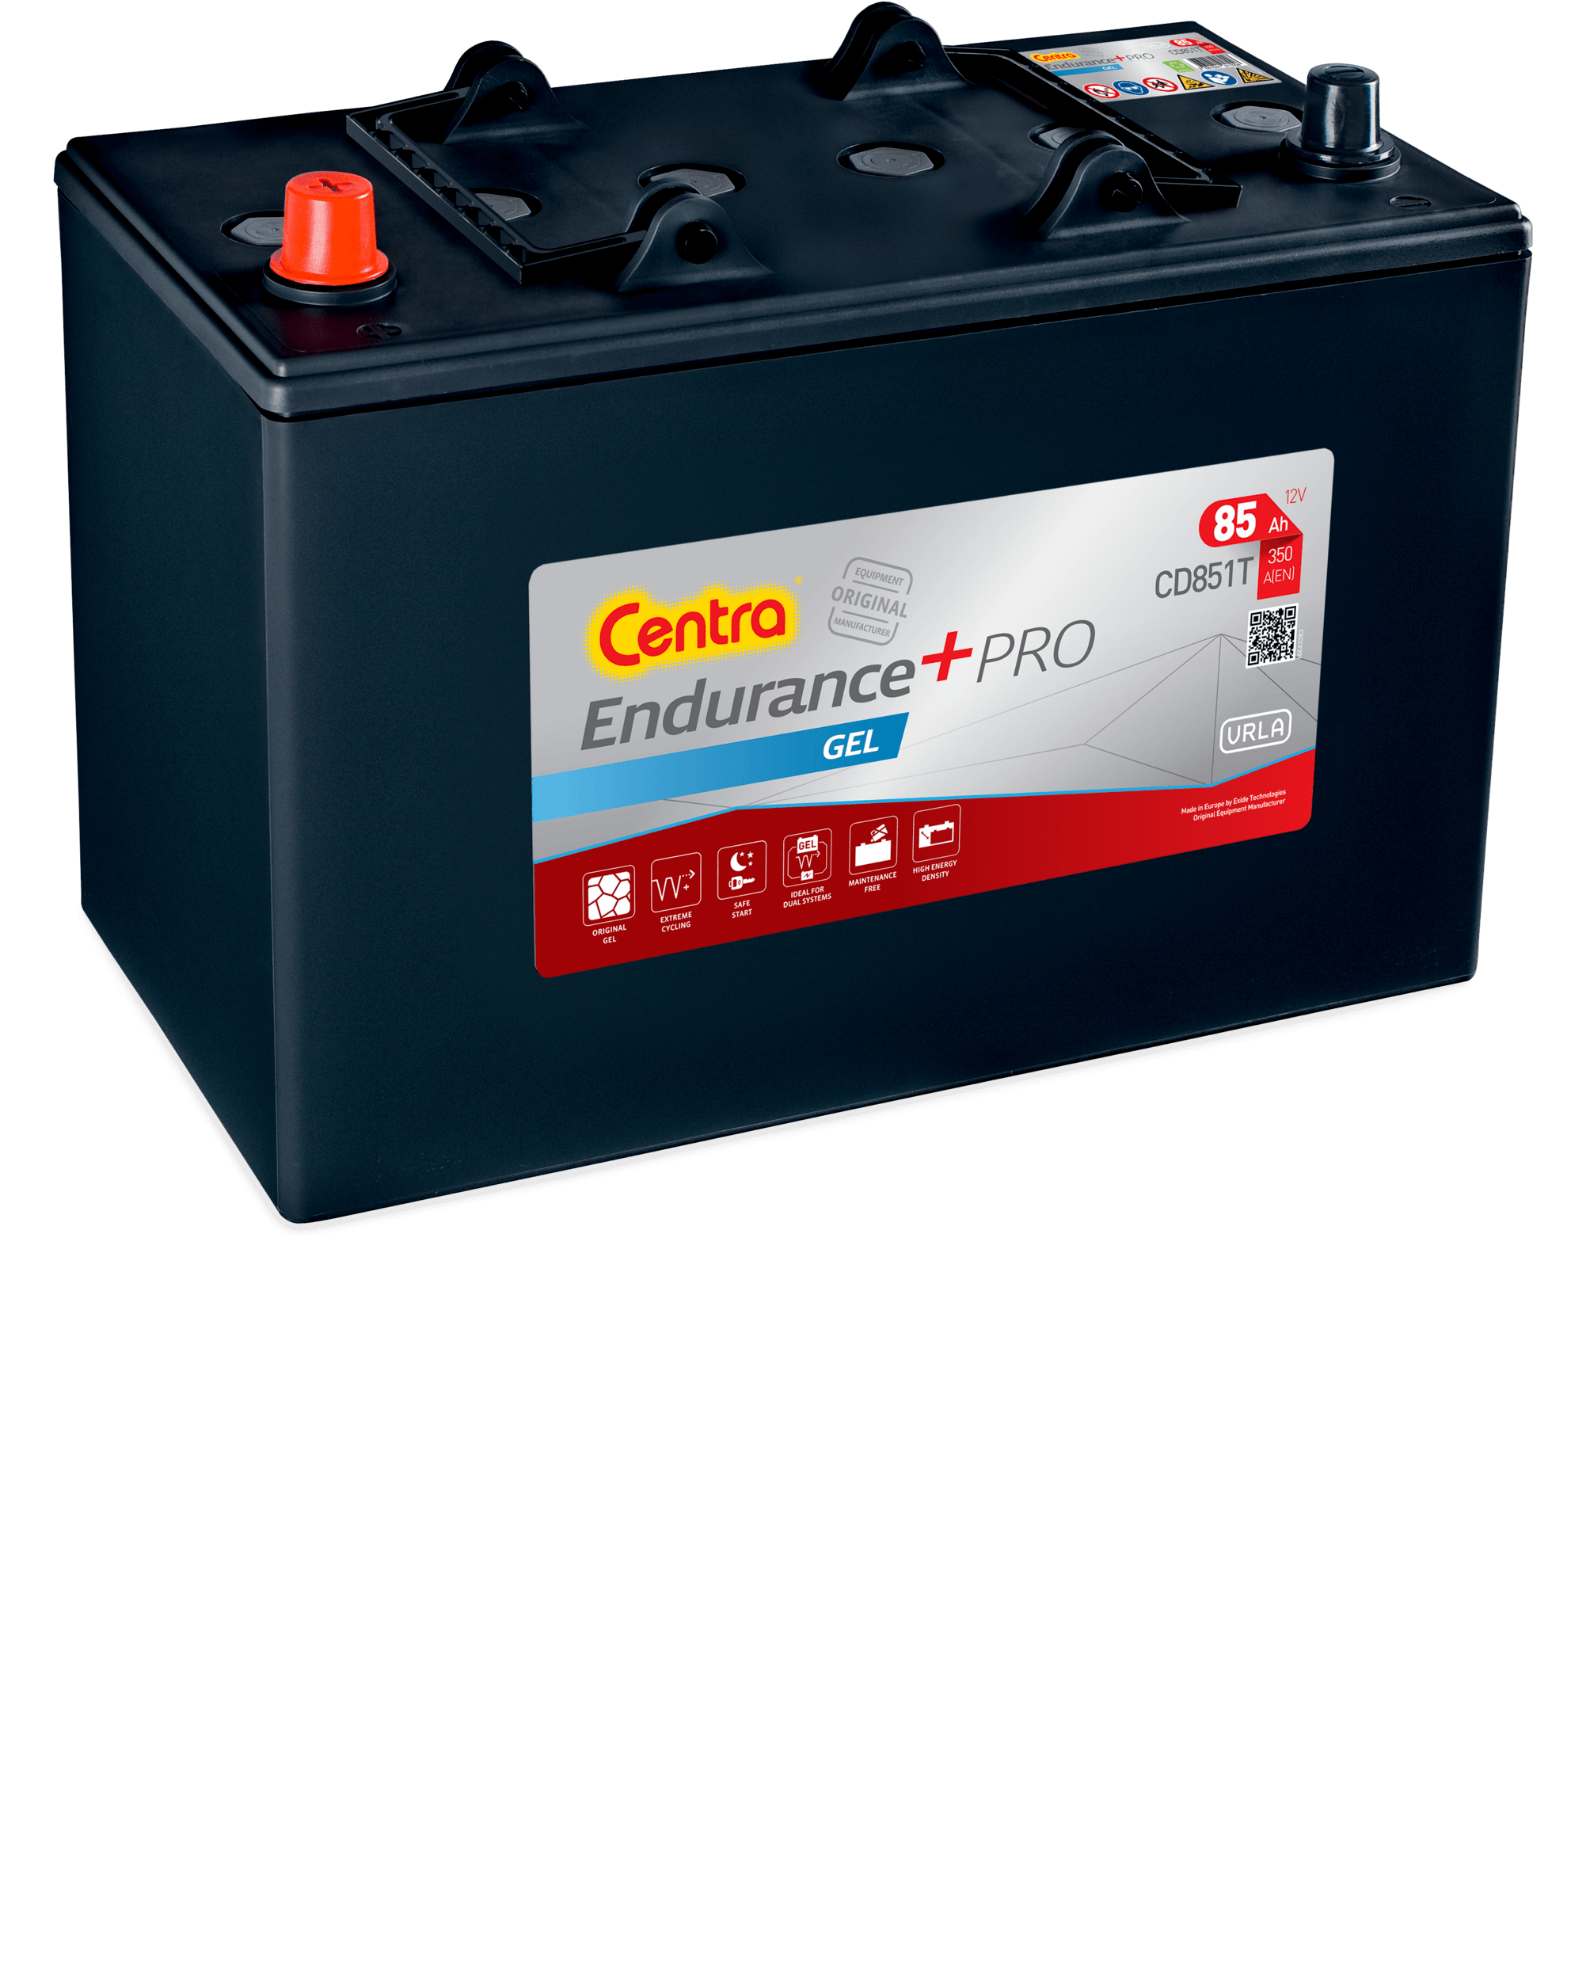 Obrázok Batéria CENTRA Endurance+PRO GEL CD851T